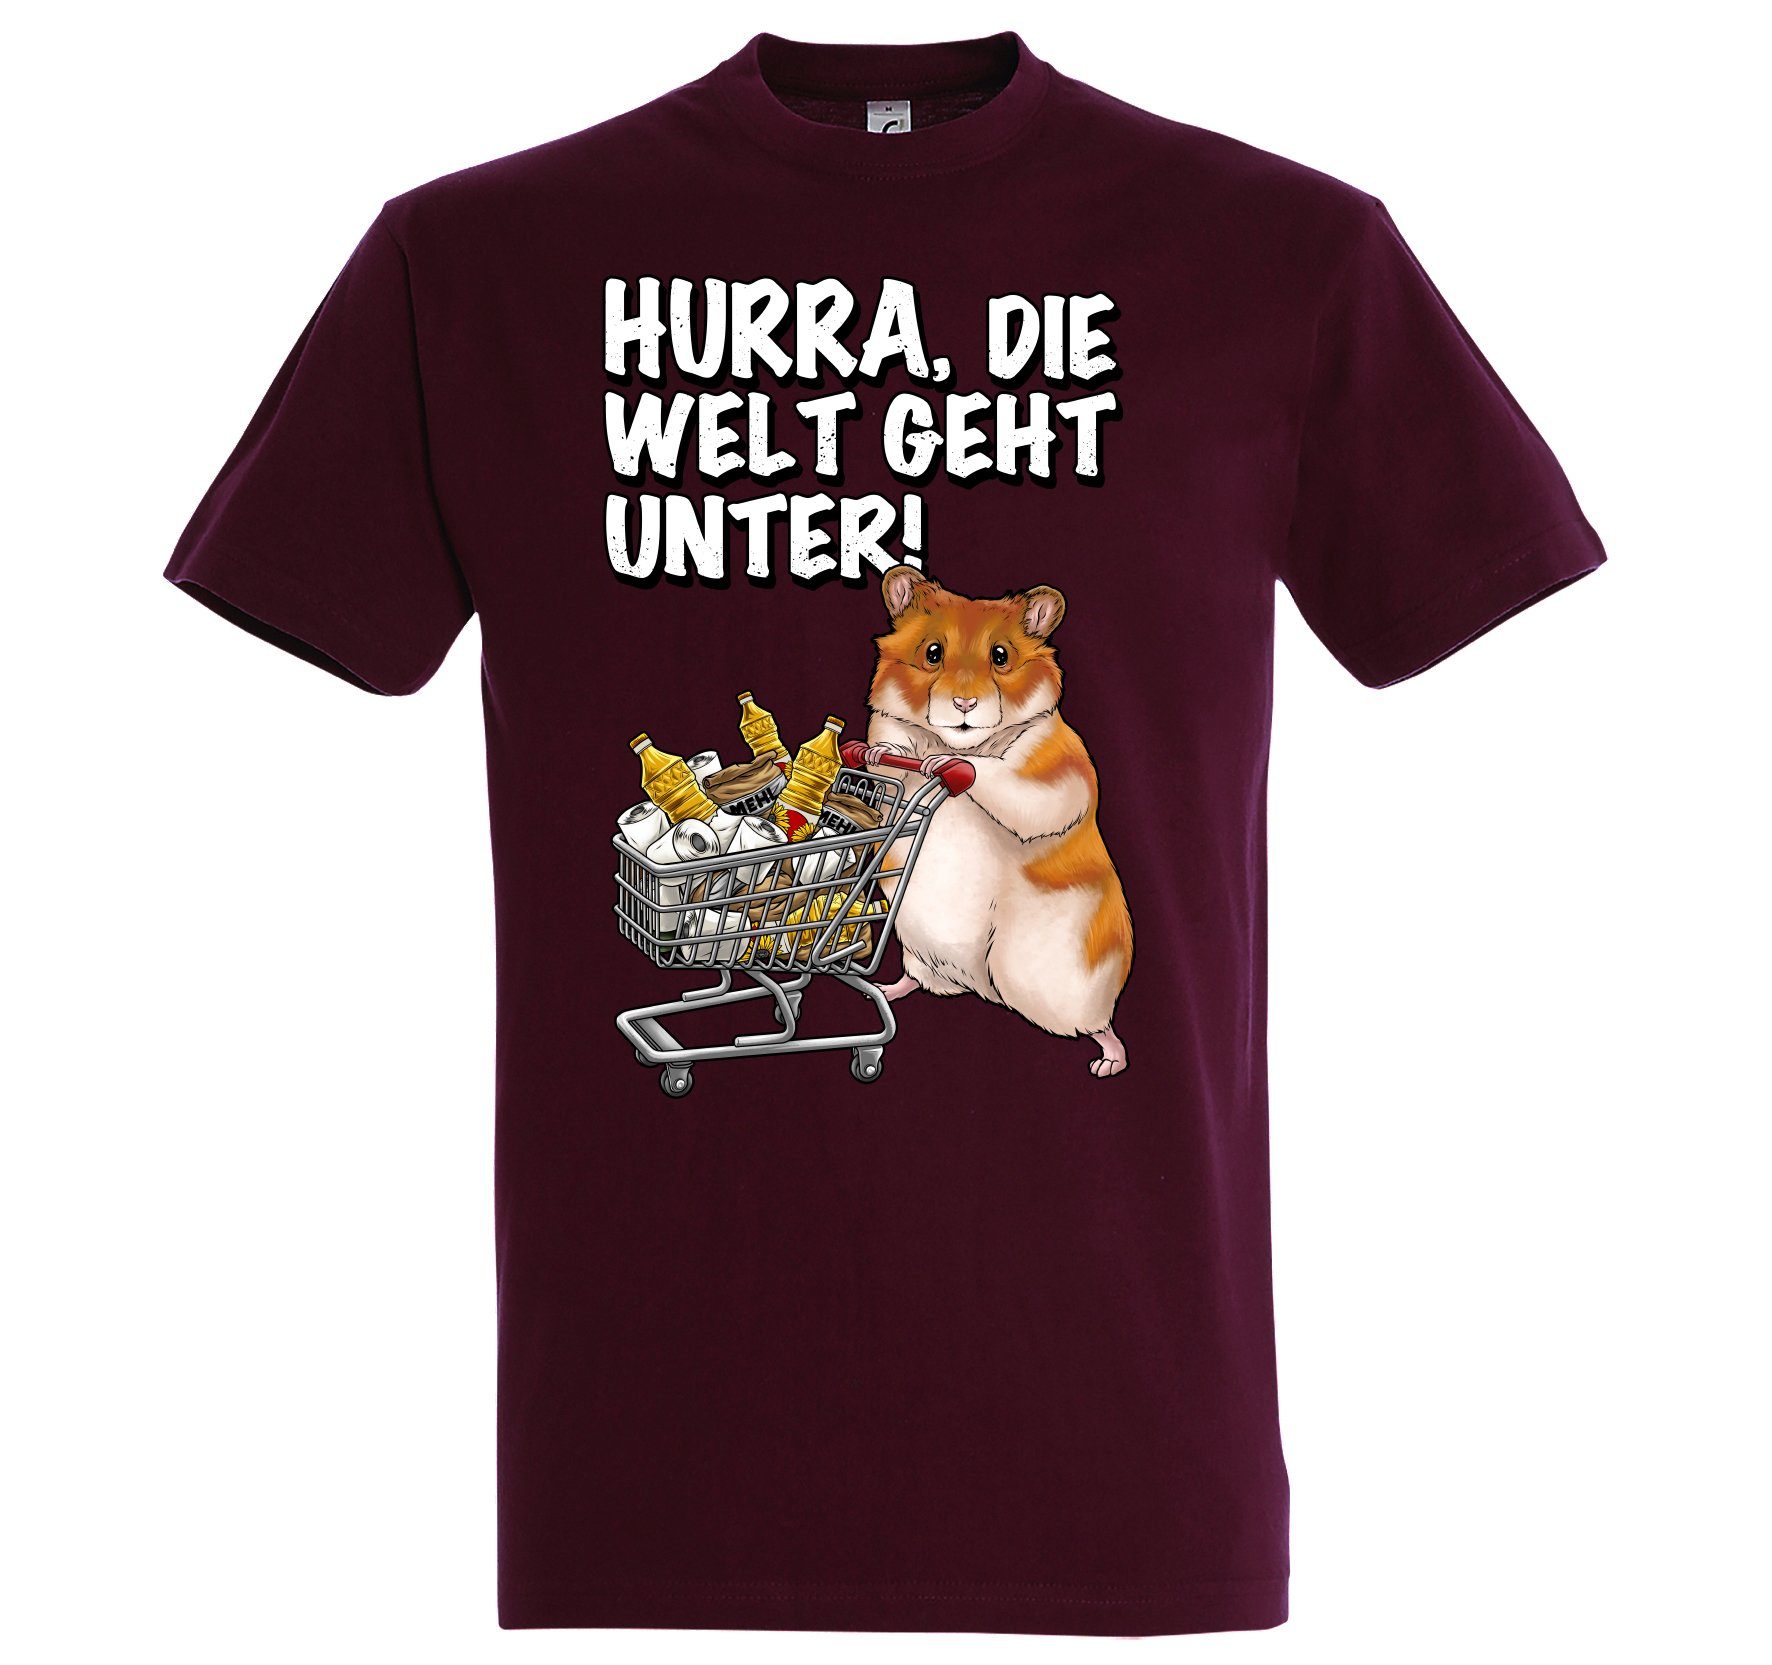 Die Unter Spruch Geht Youth Hurra Print-Shirt Burgund Herren Designz T-Shirt Print lustigem Welt mit Hamster